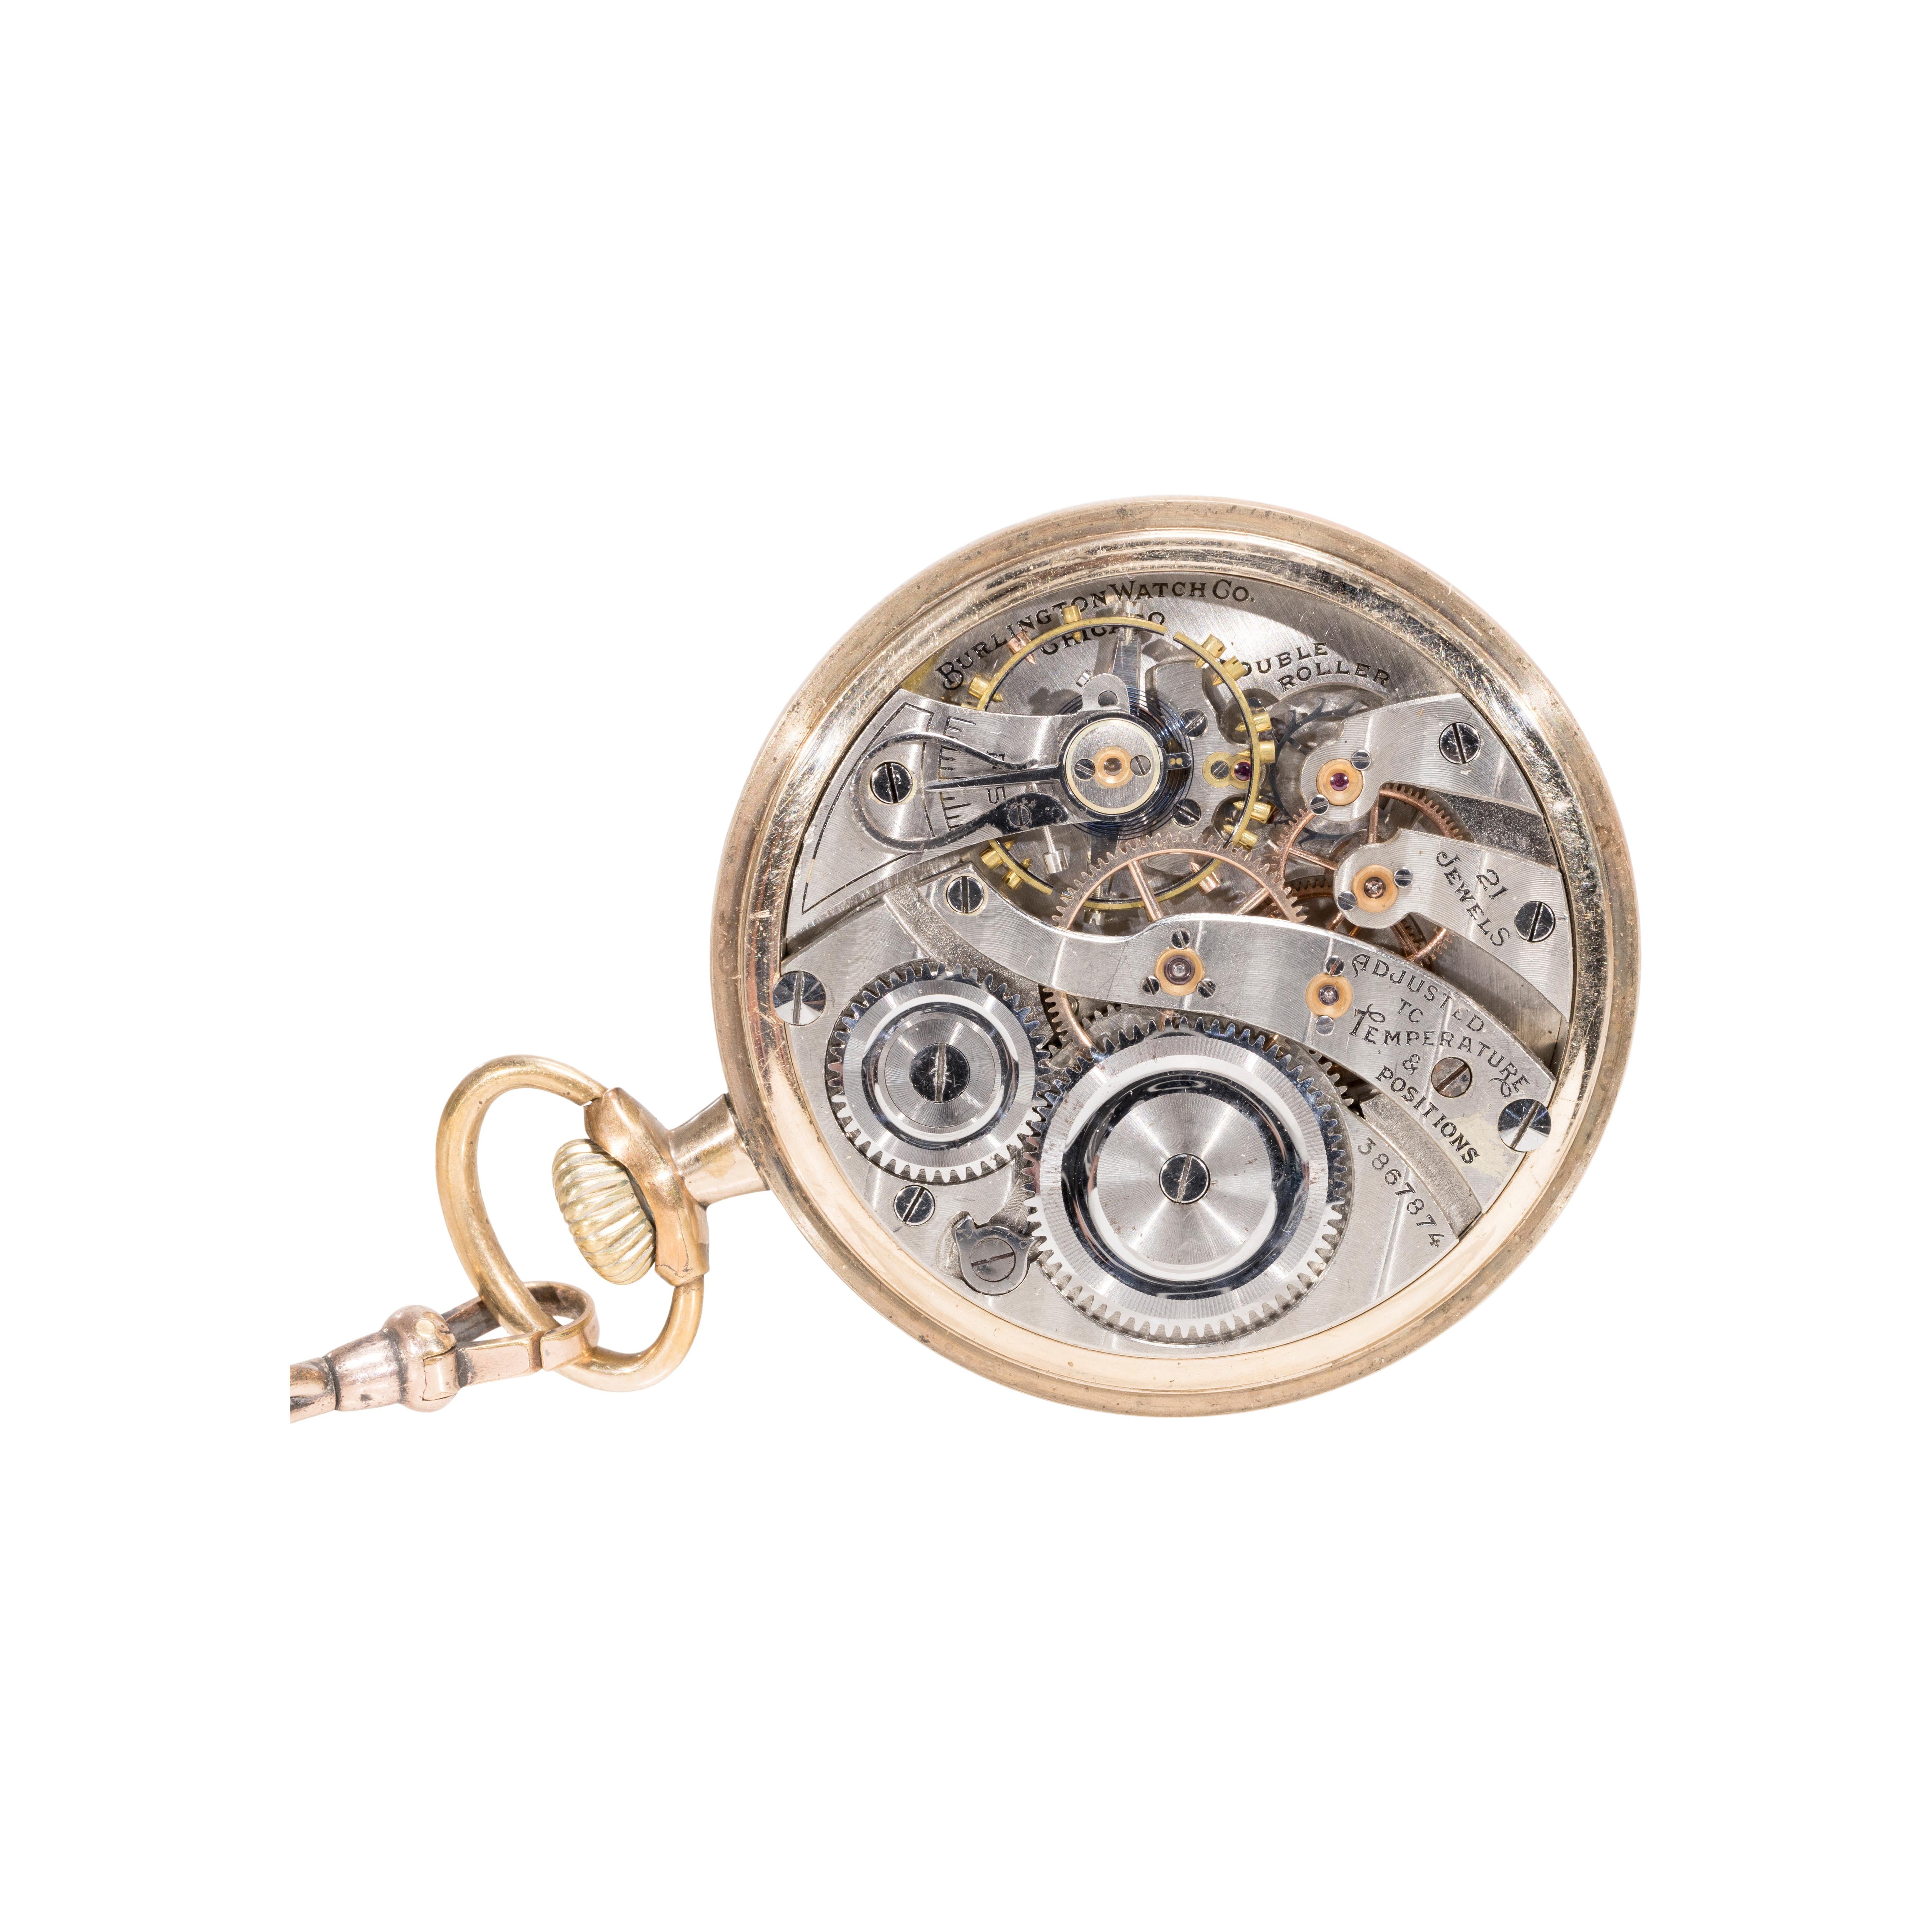 burlington special pocket watch